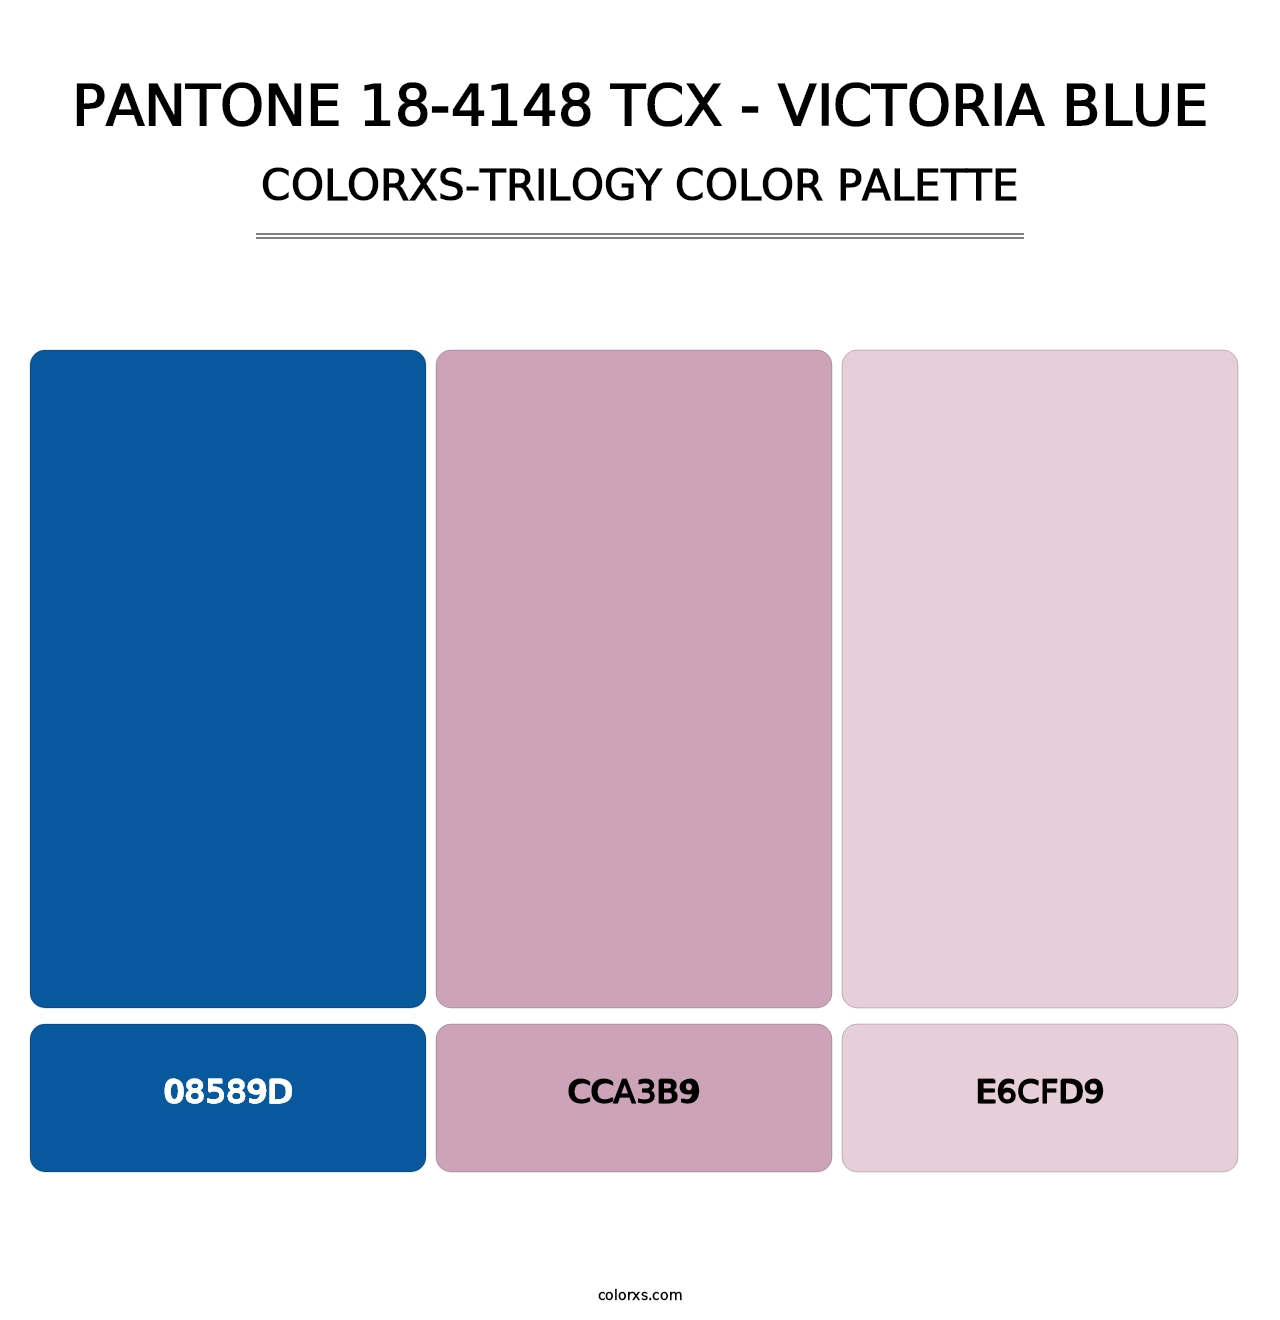 PANTONE 18-4148 TCX - Victoria Blue - Colorxs Trilogy Palette